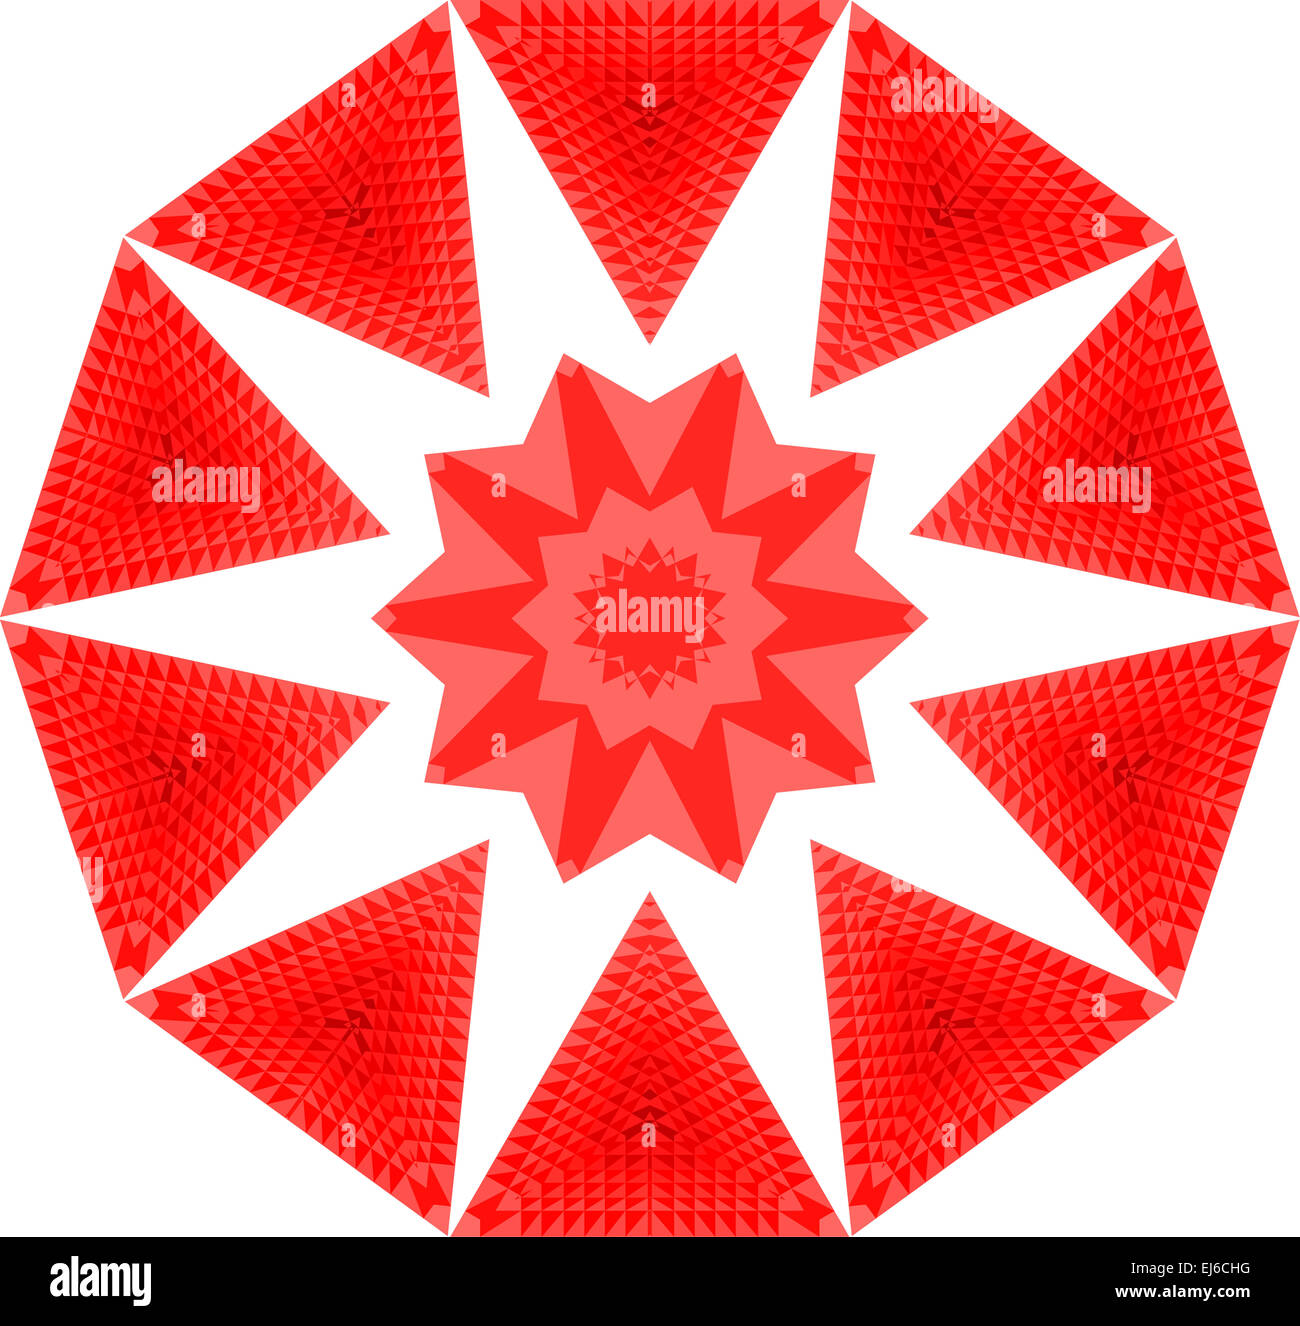 Eine rote und weiße Mandala Bild aus vielen kleinen Dreiecken gefertigt, um  eine komplizierte Konstruktion bilden Stockfotografie - Alamy